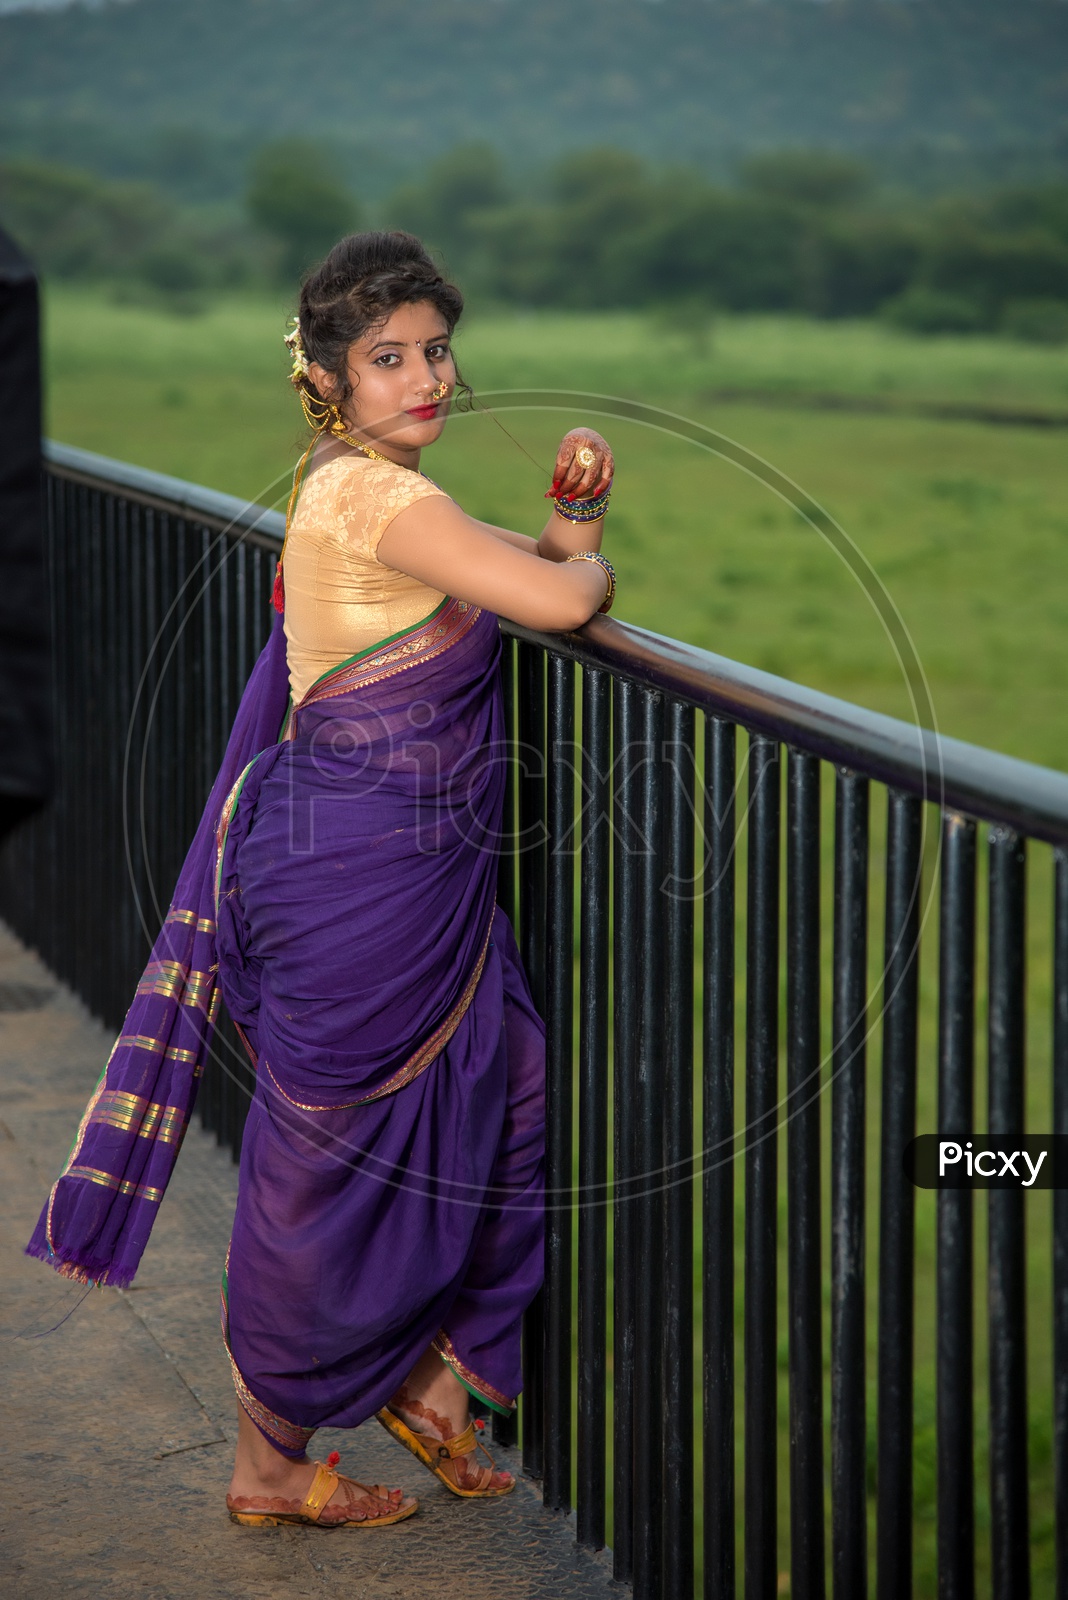 Kerala woman Stock Photos, Royalty Free Kerala woman Images | Depositphotos